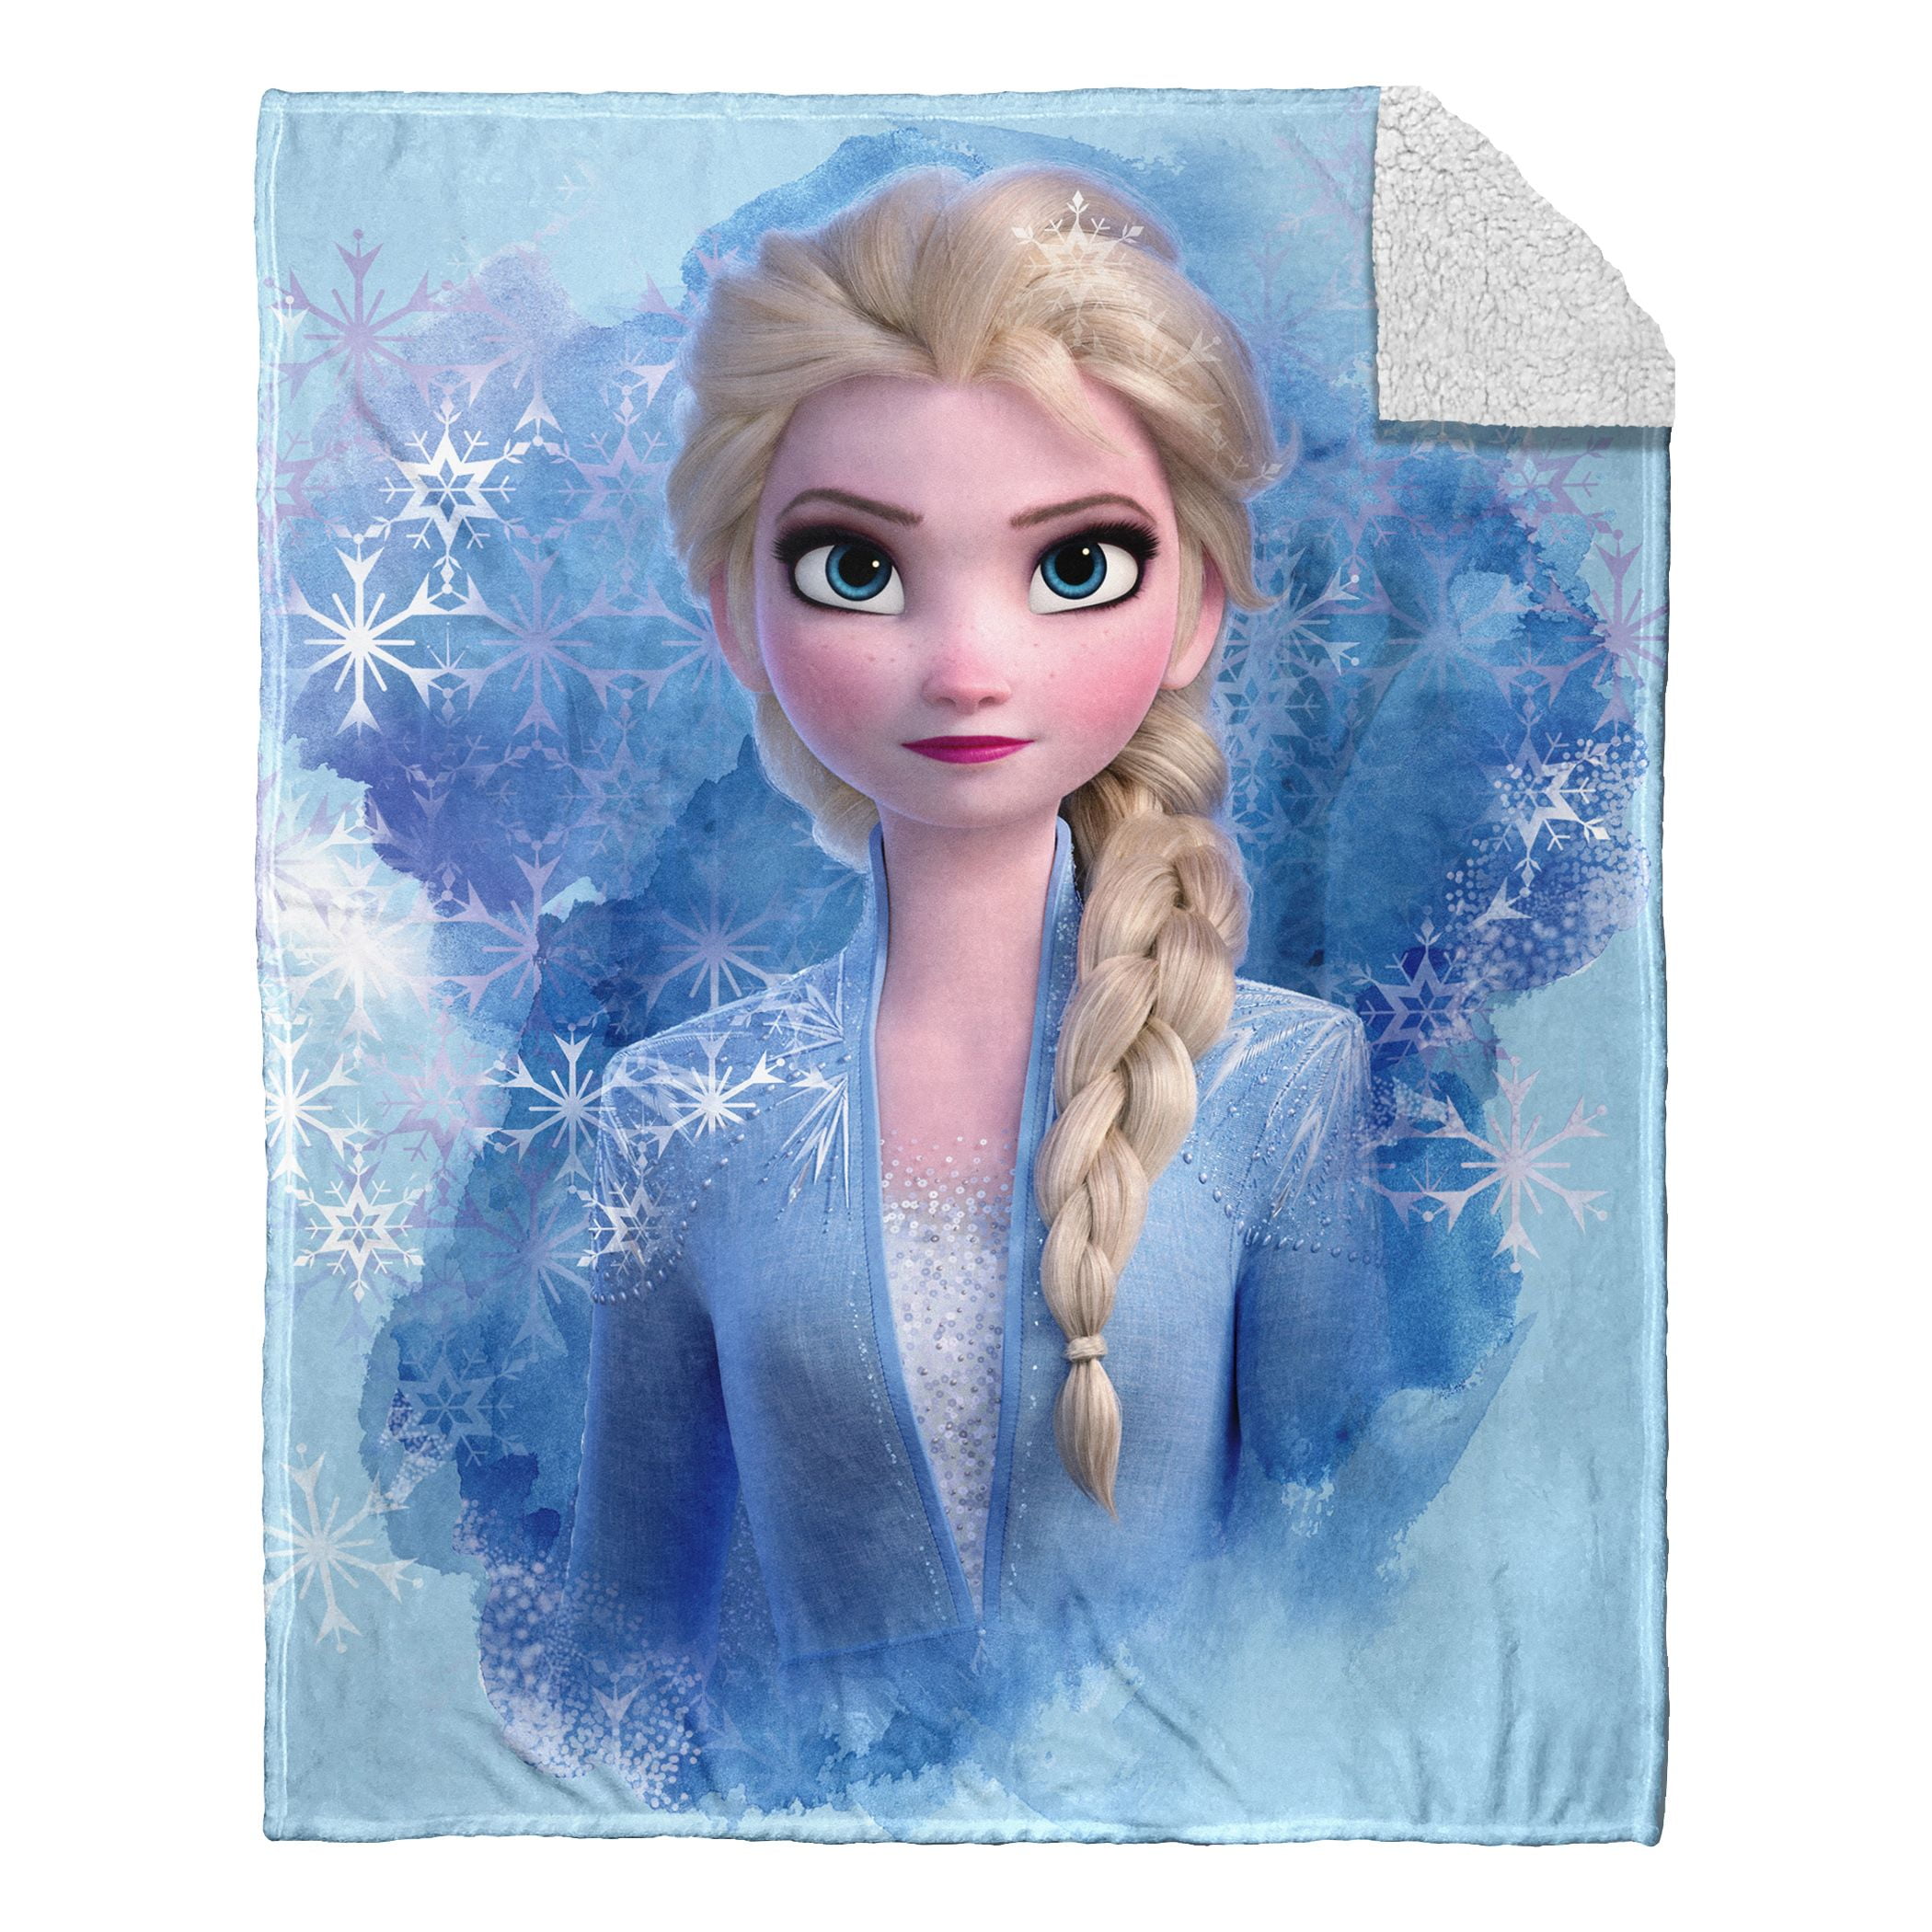 Details about   Disney Frozen 2 Silk Touch Blanket Throw Nature Bedding Anna Elsa 40x50in new